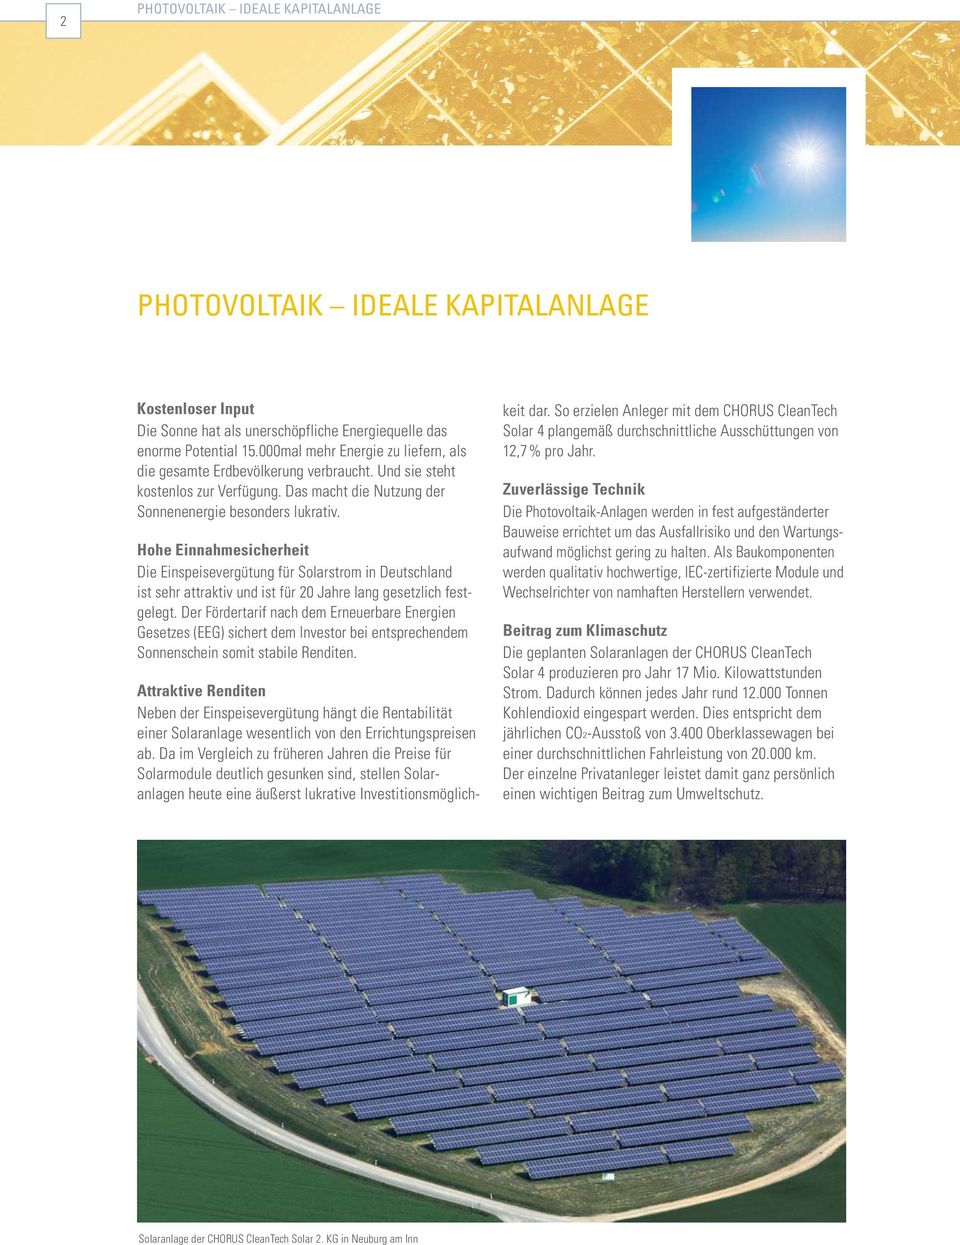 Hohe Einnahmesicherheit Die Einspeisevergütung für Solarstrom in Deutschland ist sehr attraktiv und ist für 20 Jahre lang gesetzlich fest - gelegt.